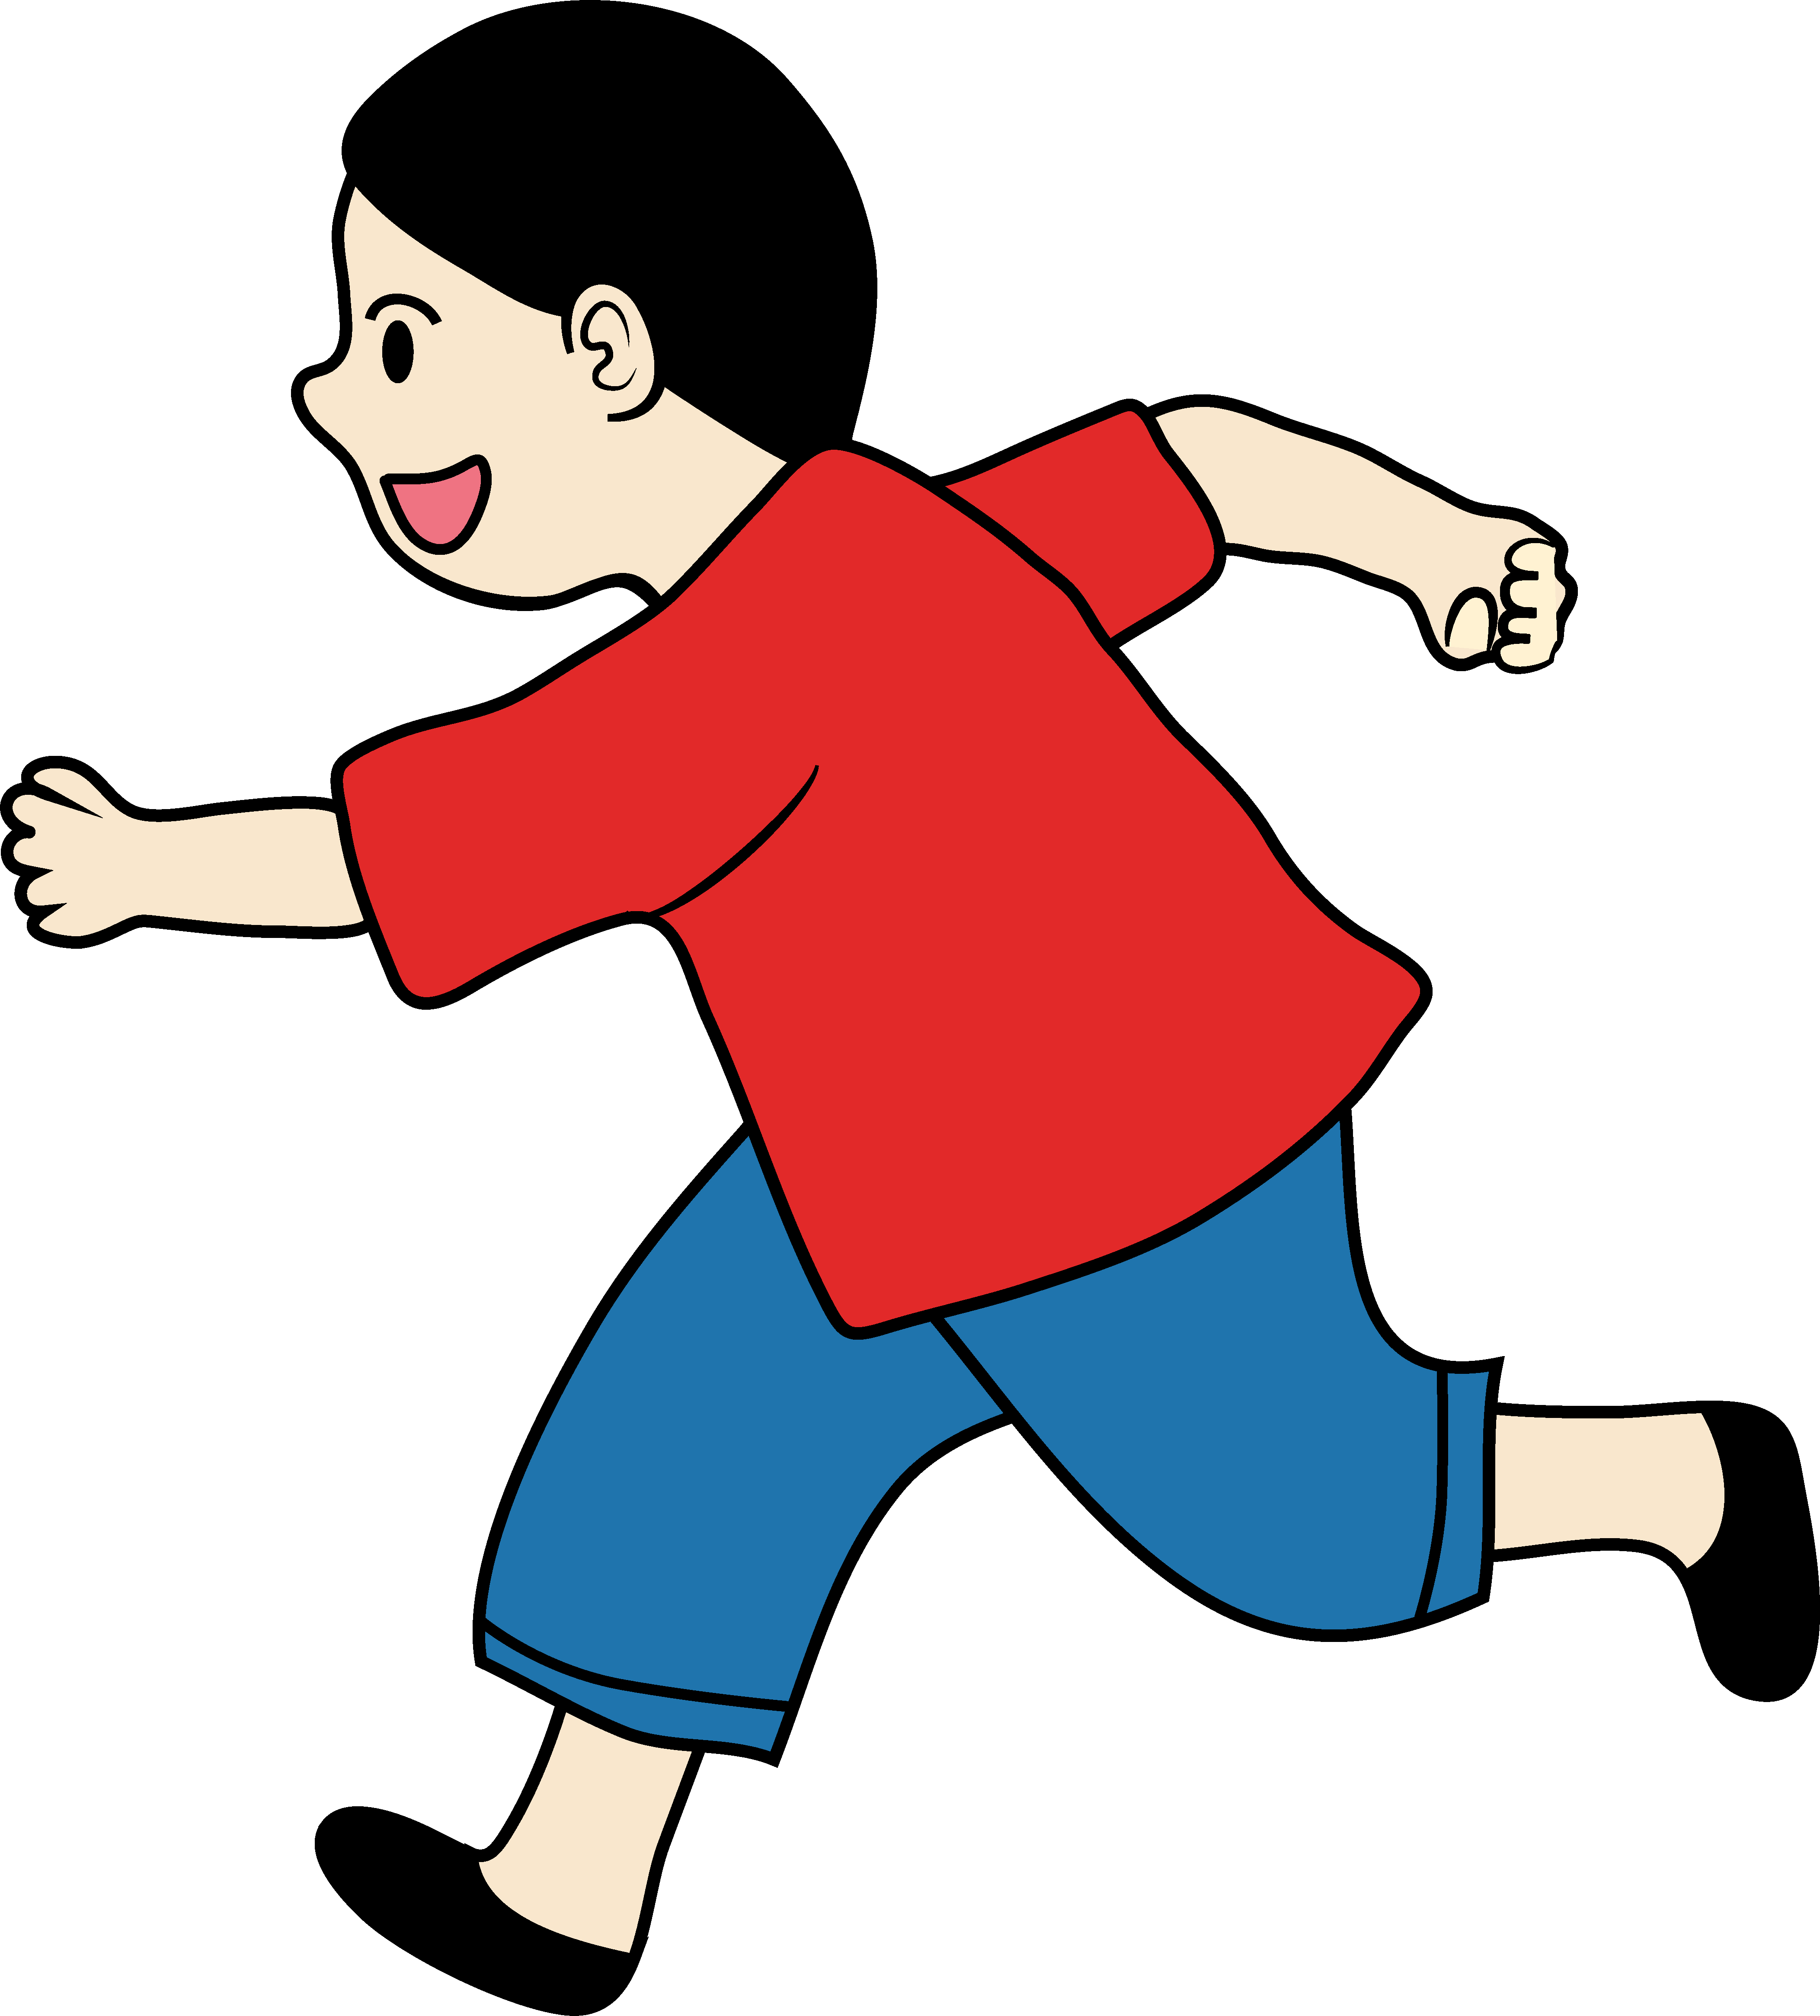 Clipart of a Little Boy Running - Free Clip Art. Playing children Clip Art